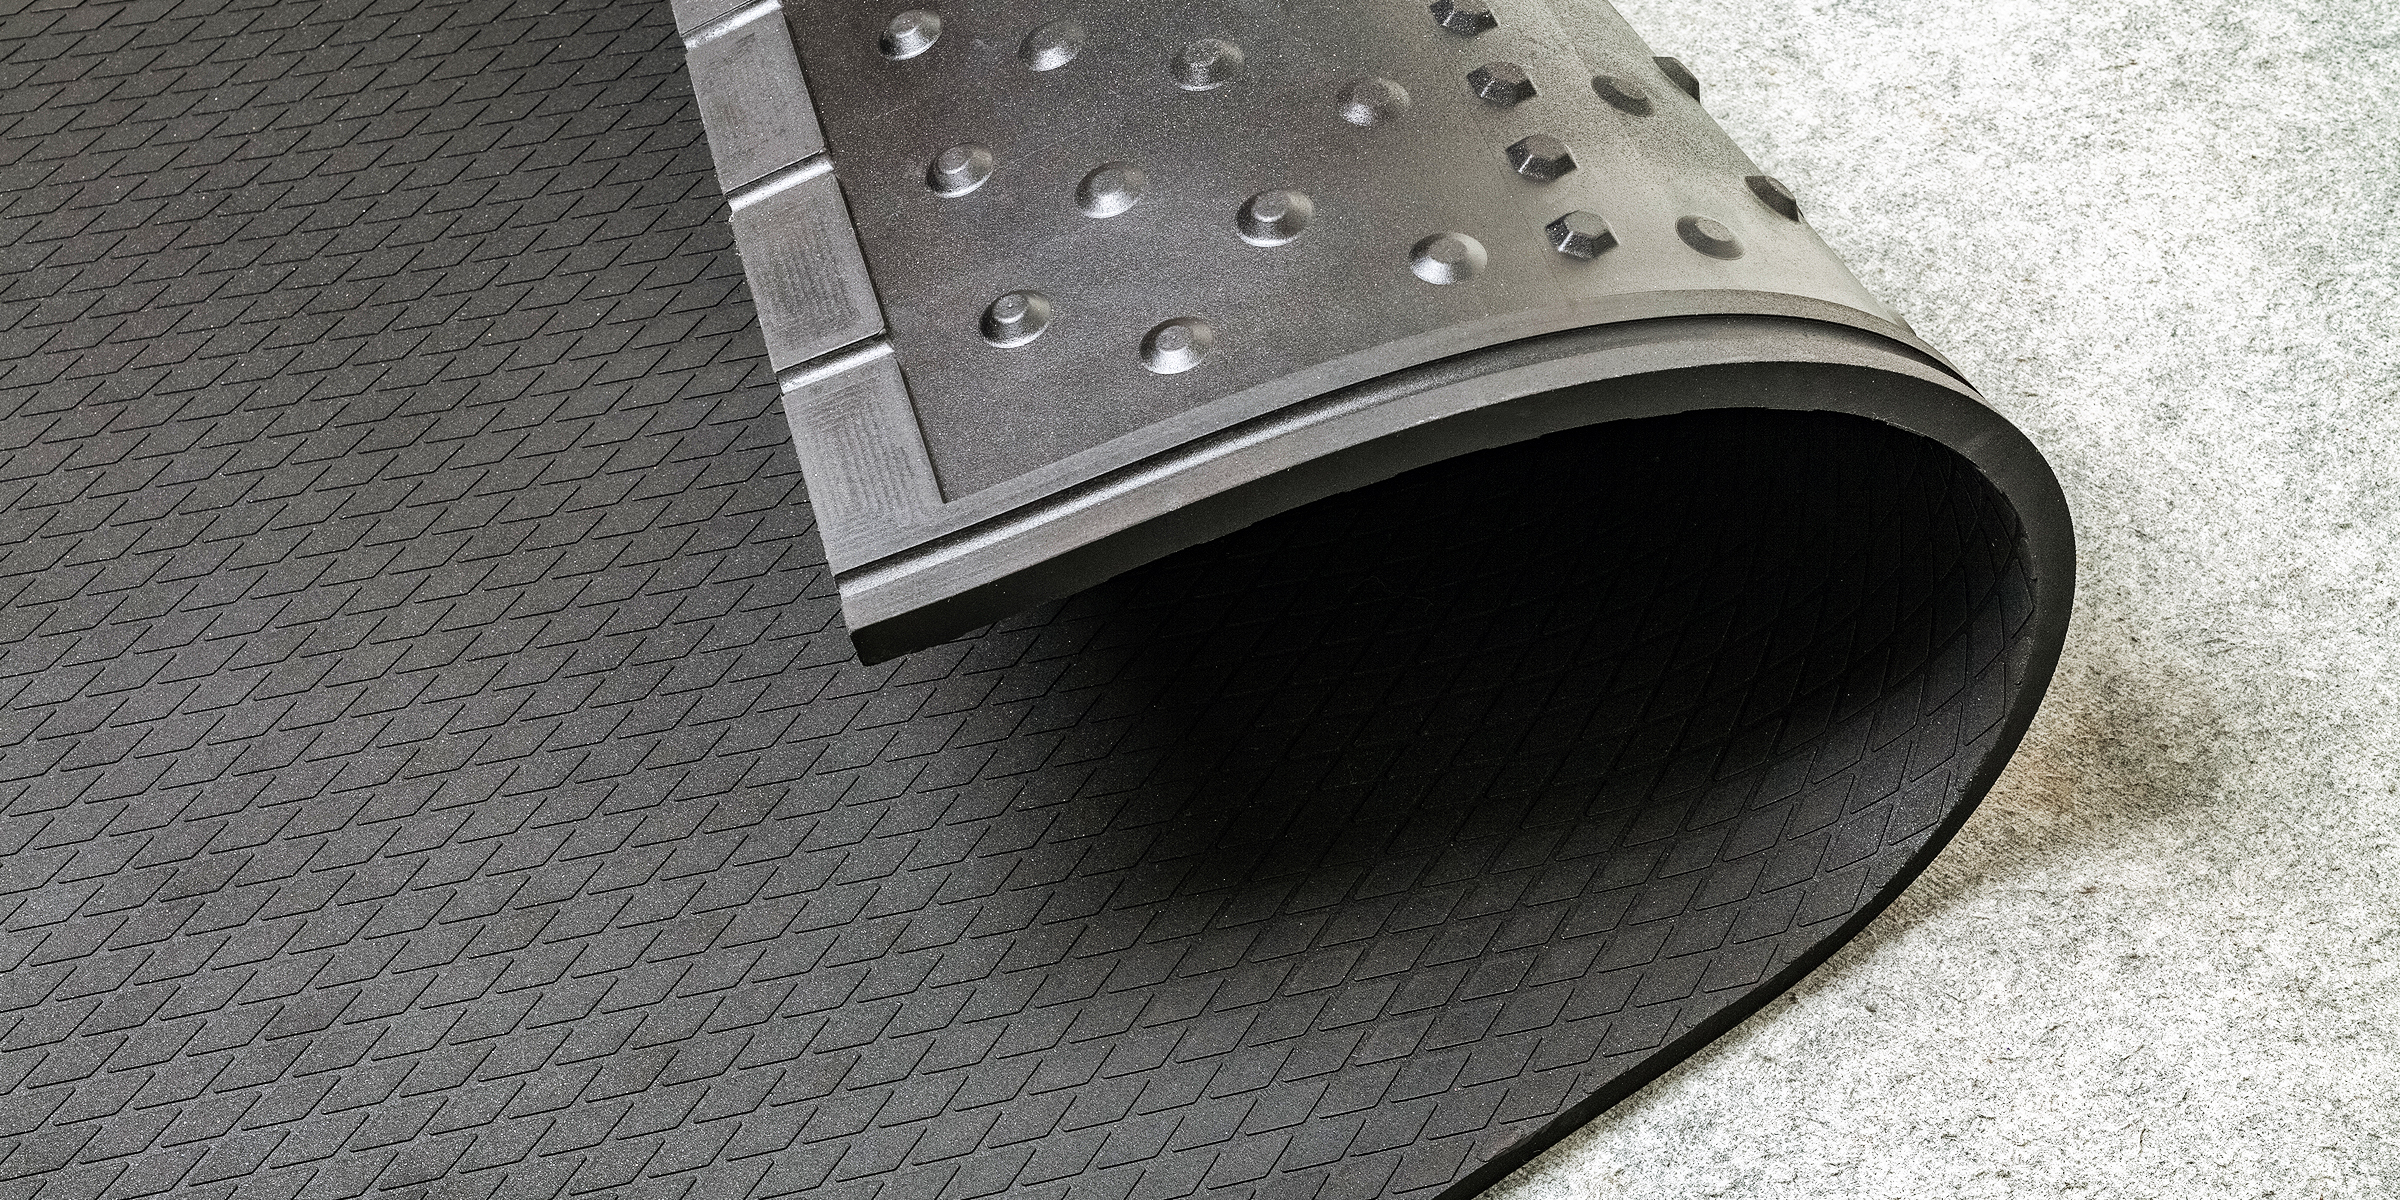 A rubber mat | Source: Shutterstock